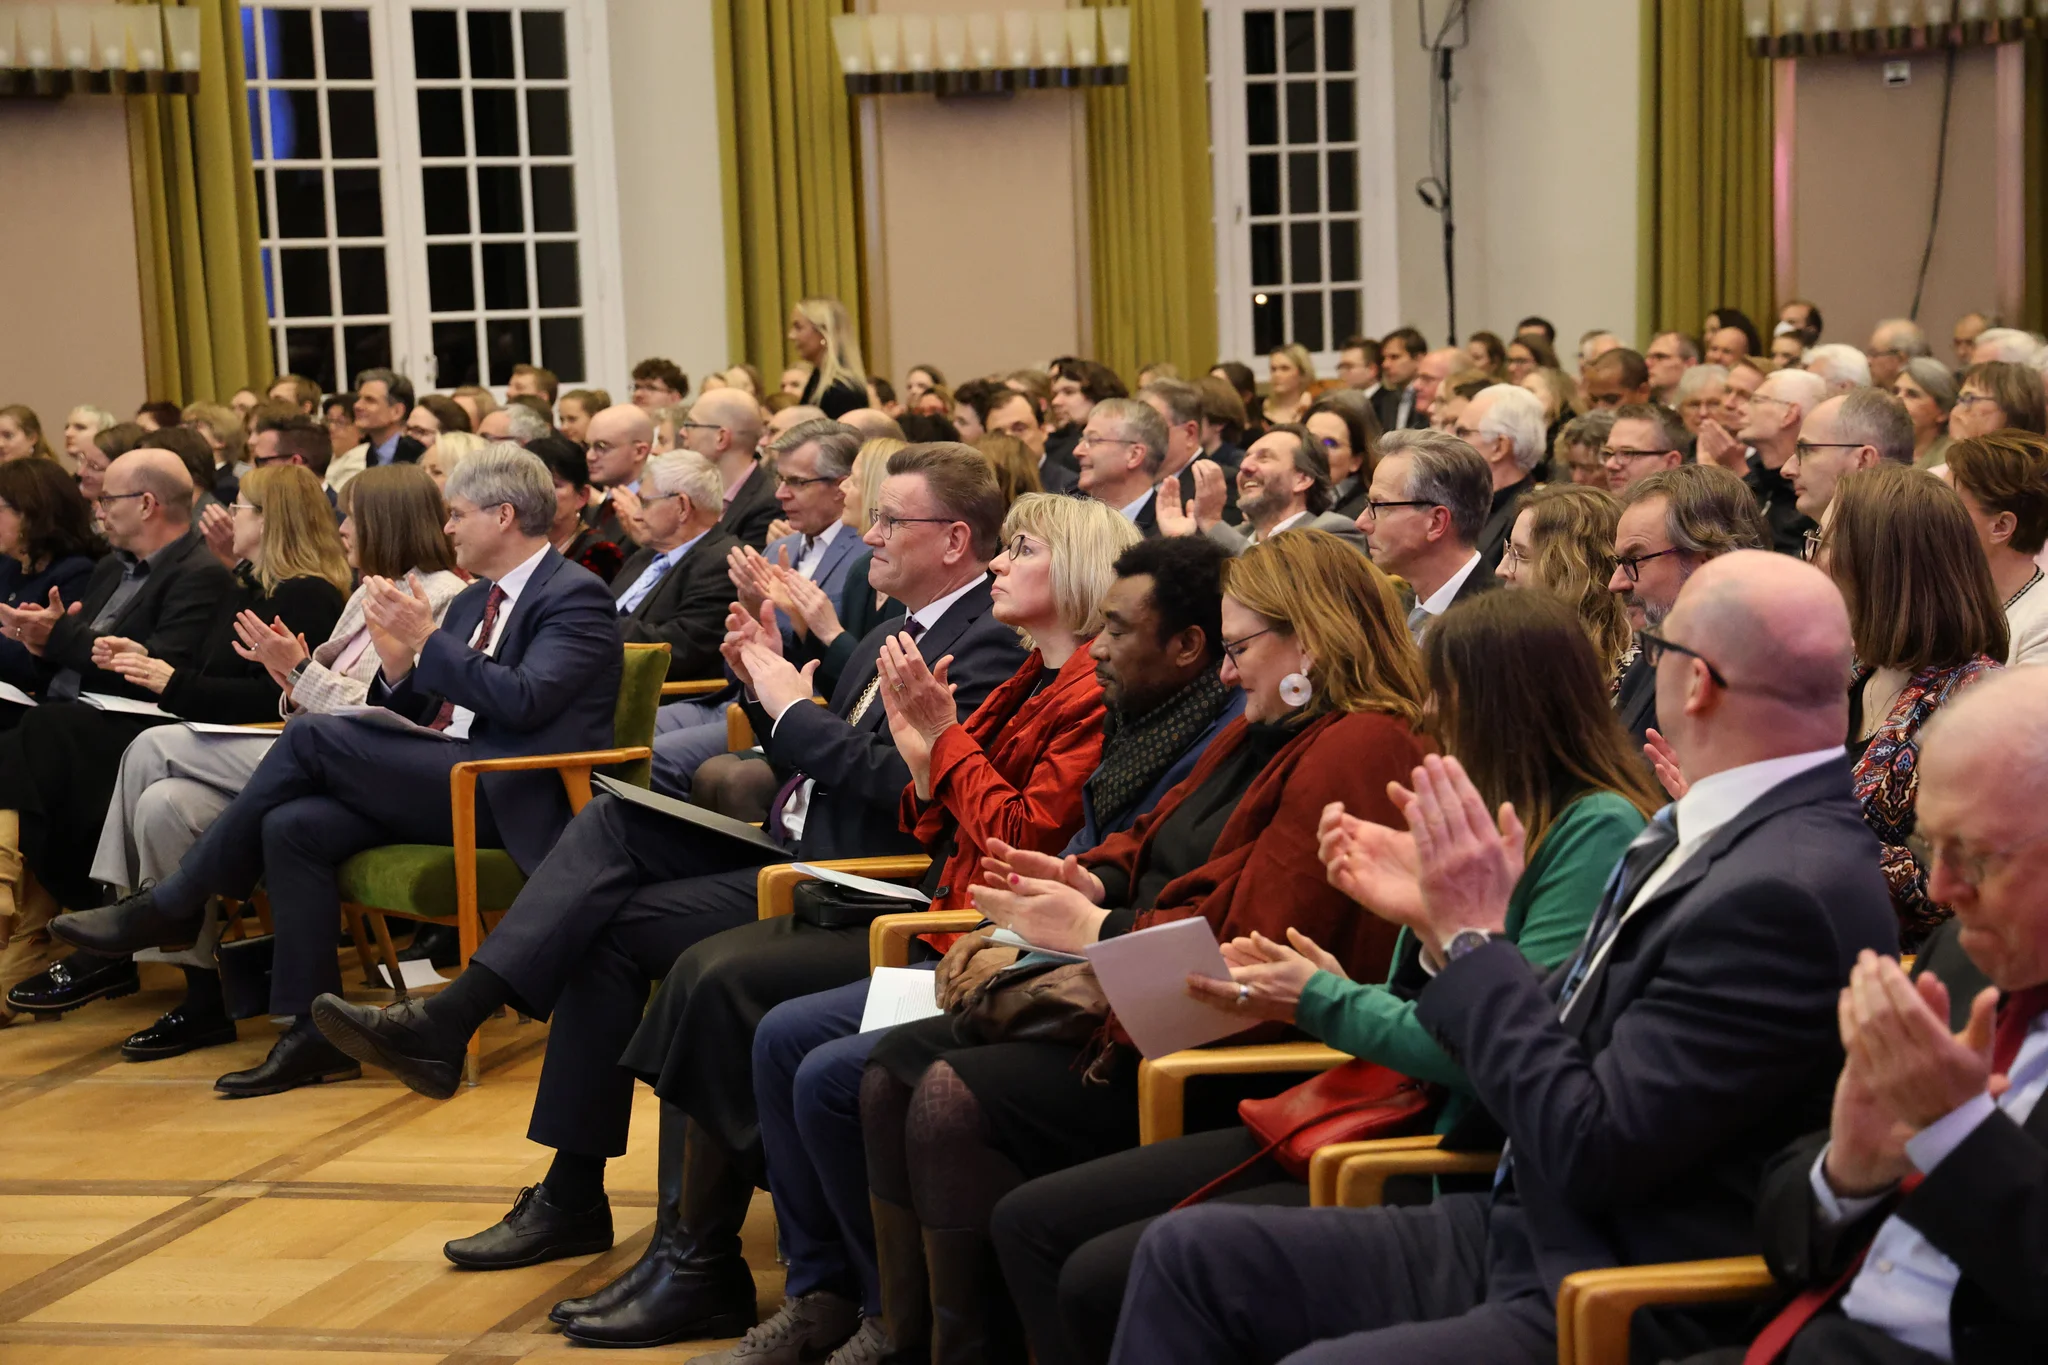 Beifall für die Preisträger beim Neujahrsempfang Uni Münster. Foto: Oliver Werner